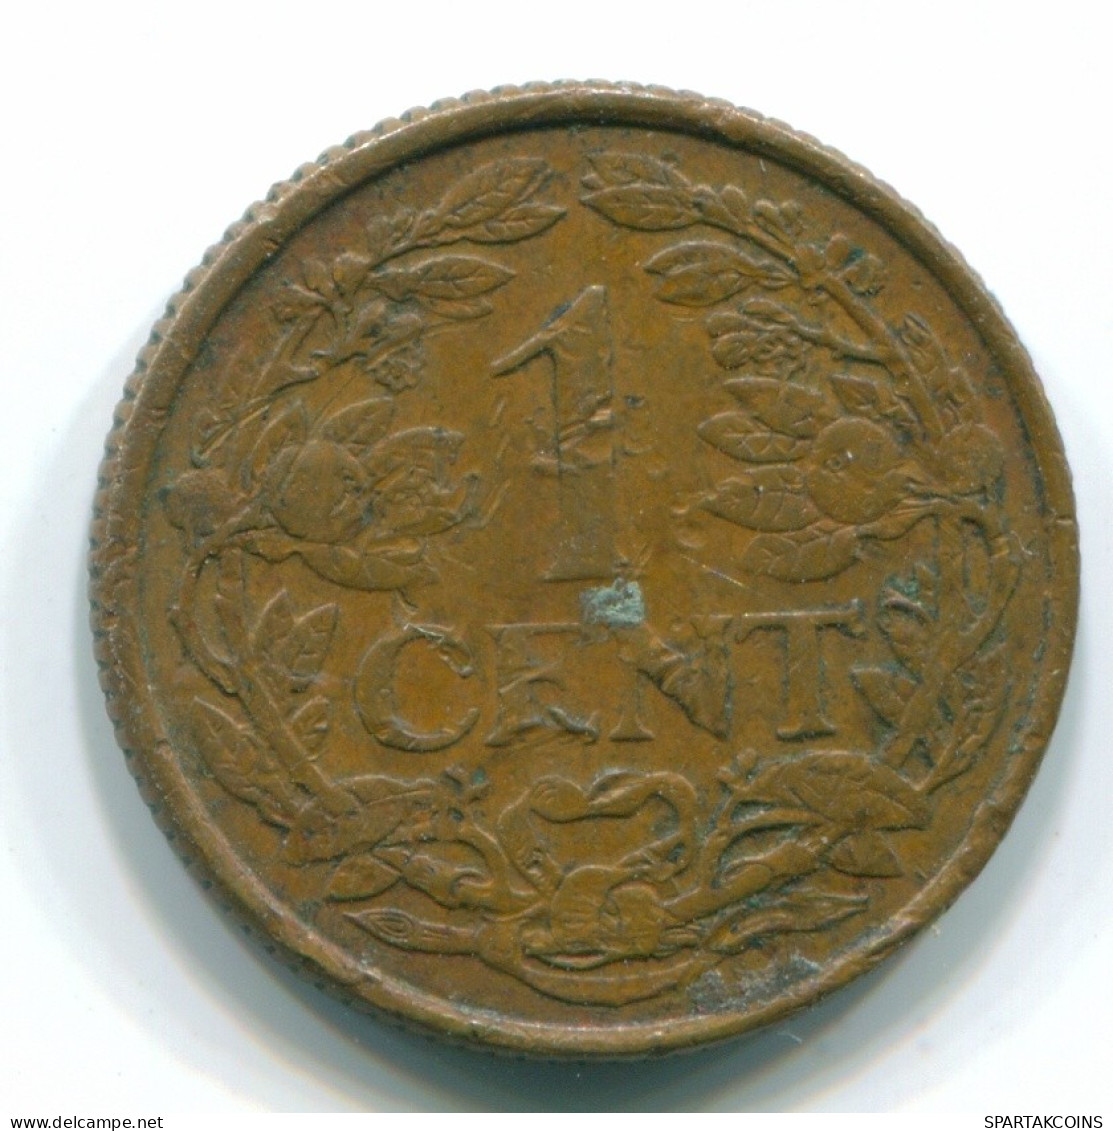 1 CENT 1965 NETHERLANDS ANTILLES Bronze Fish Colonial Coin #S11113.U.A - Antilles Néerlandaises